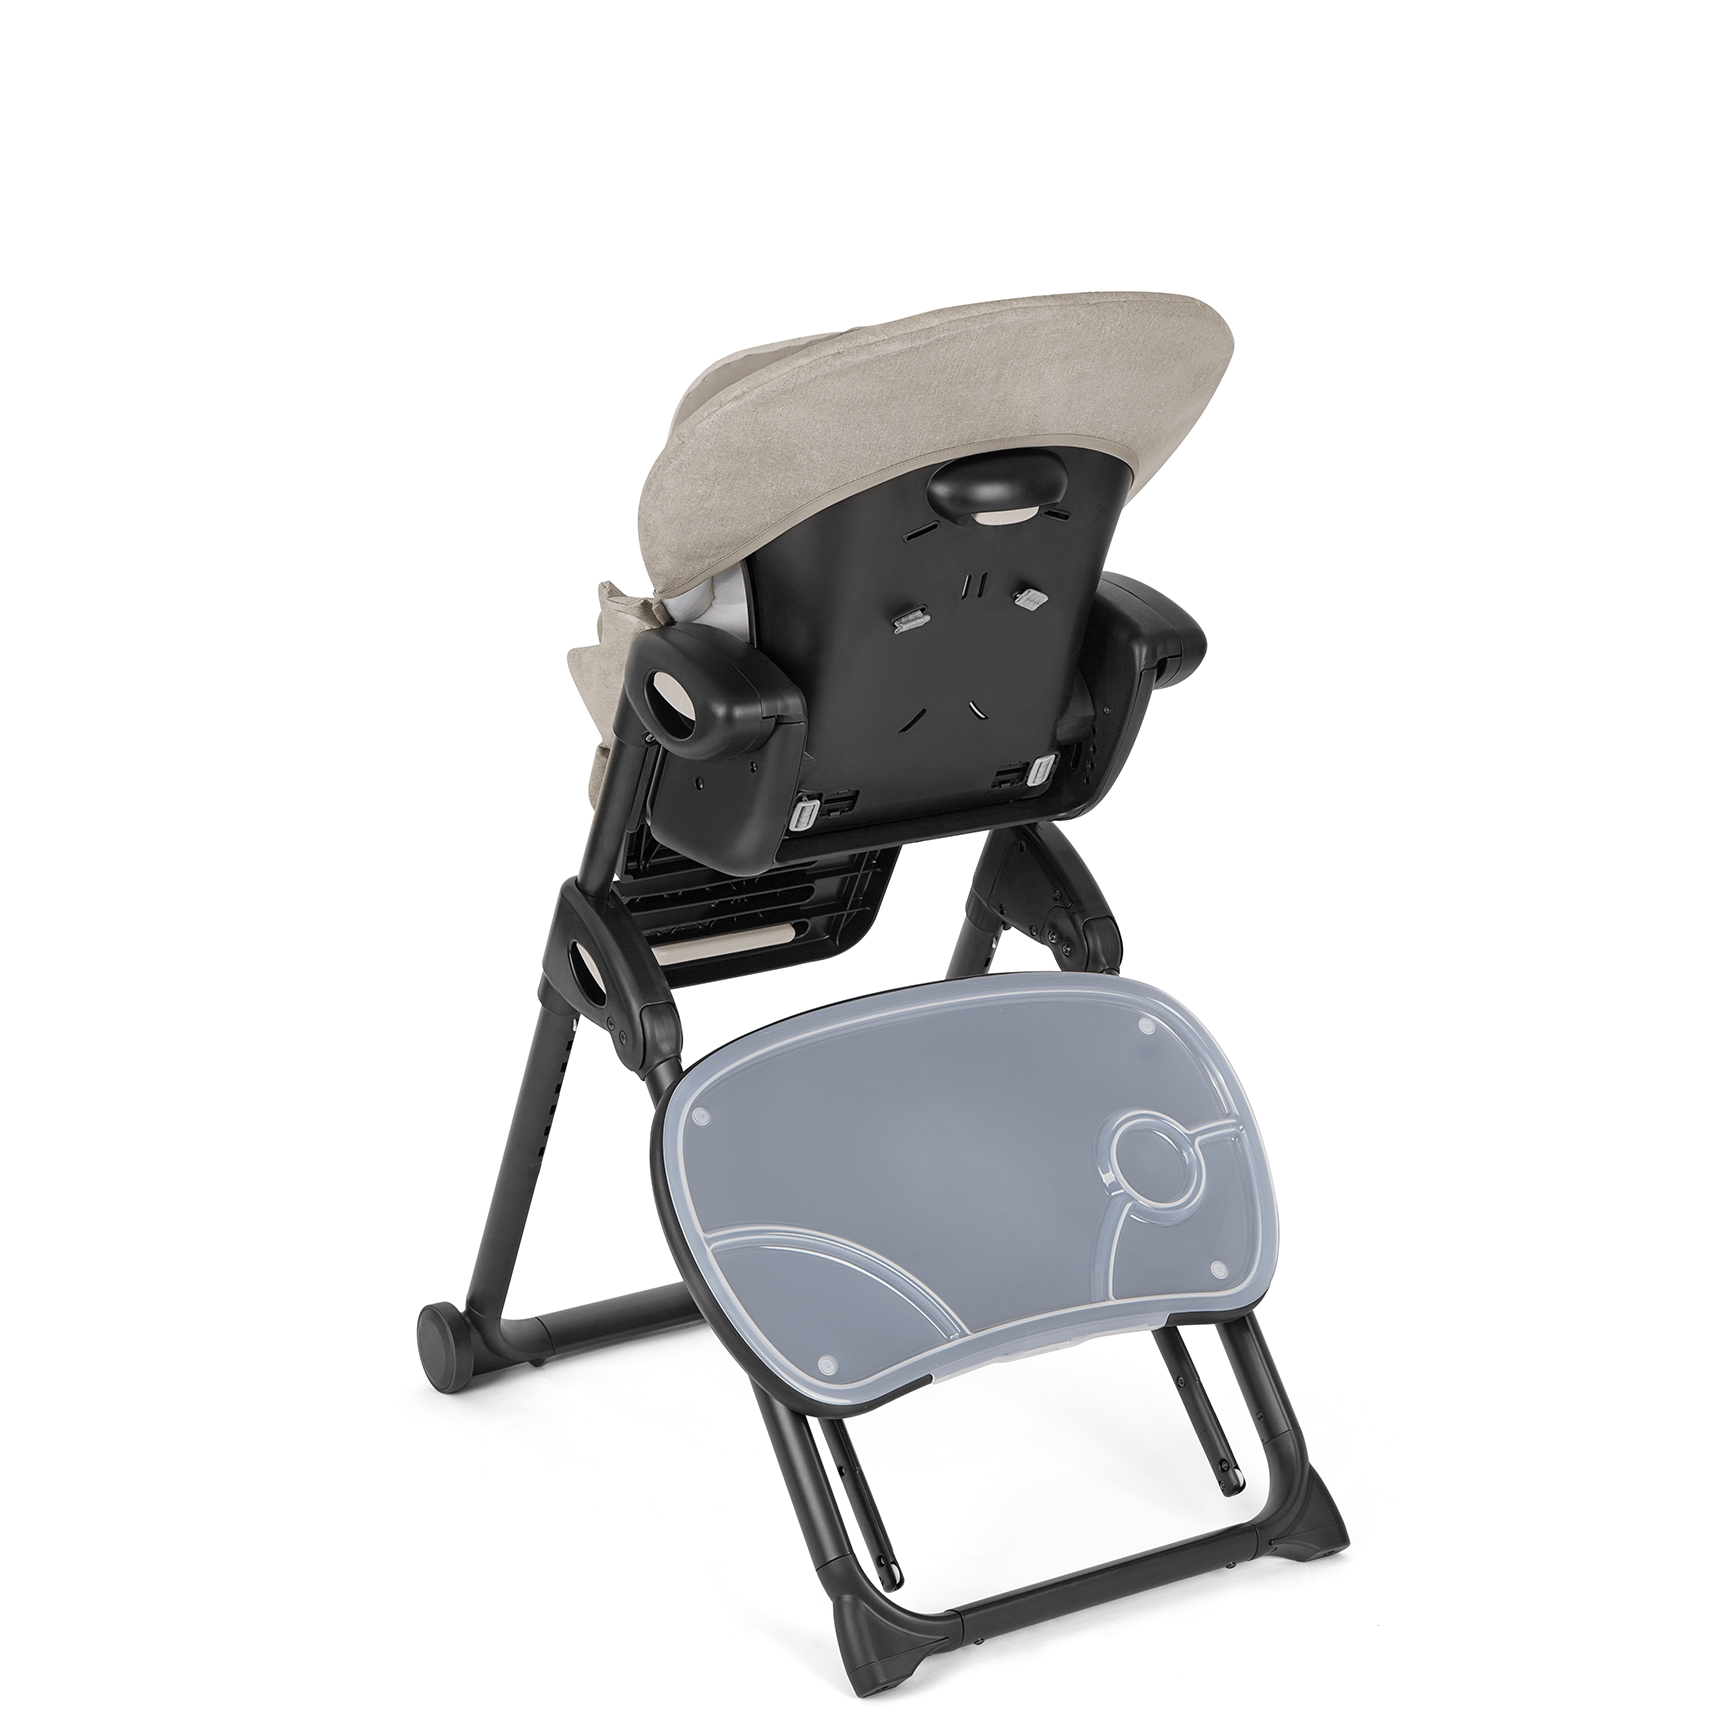 Joie baby highchairs Joie Mimzy Recline Highchair - Speckled H1013DASPK000